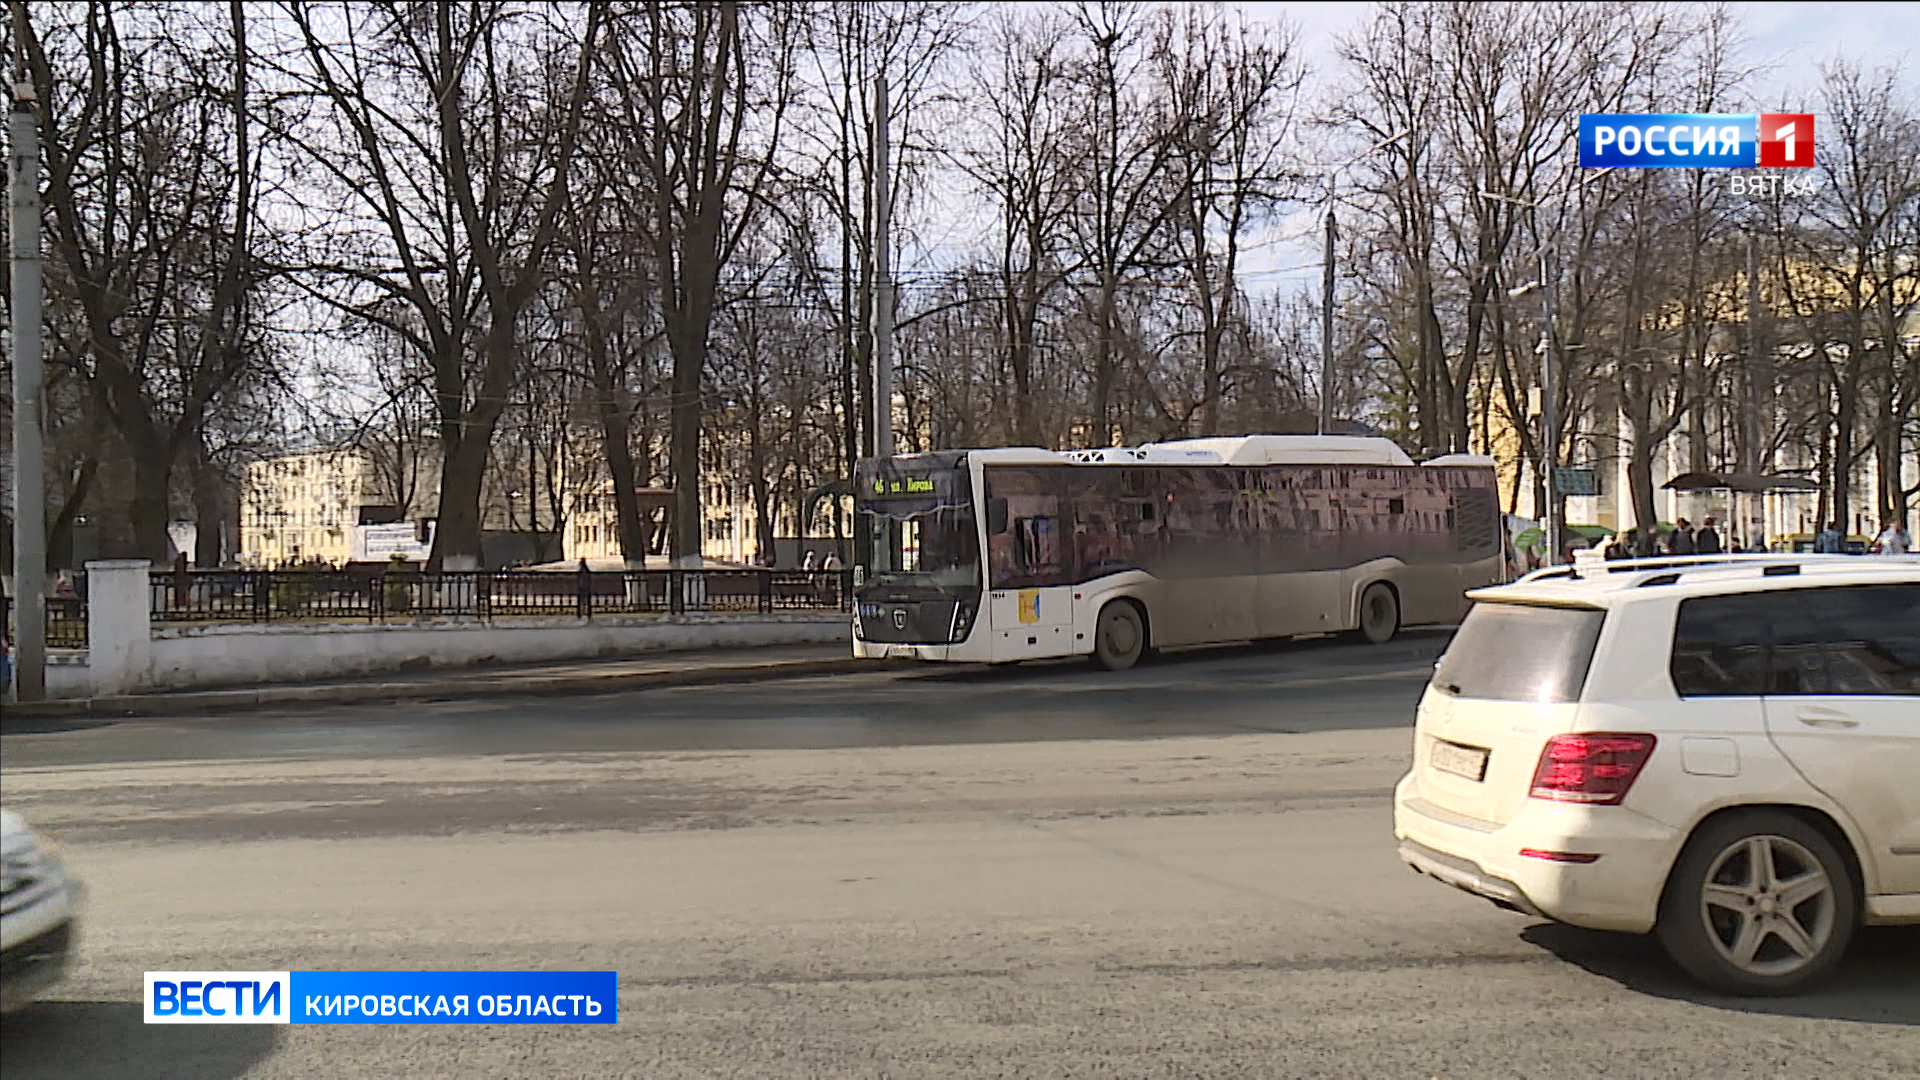 Стоимость проезда в общественном транспорте Кирова и области остается прежней